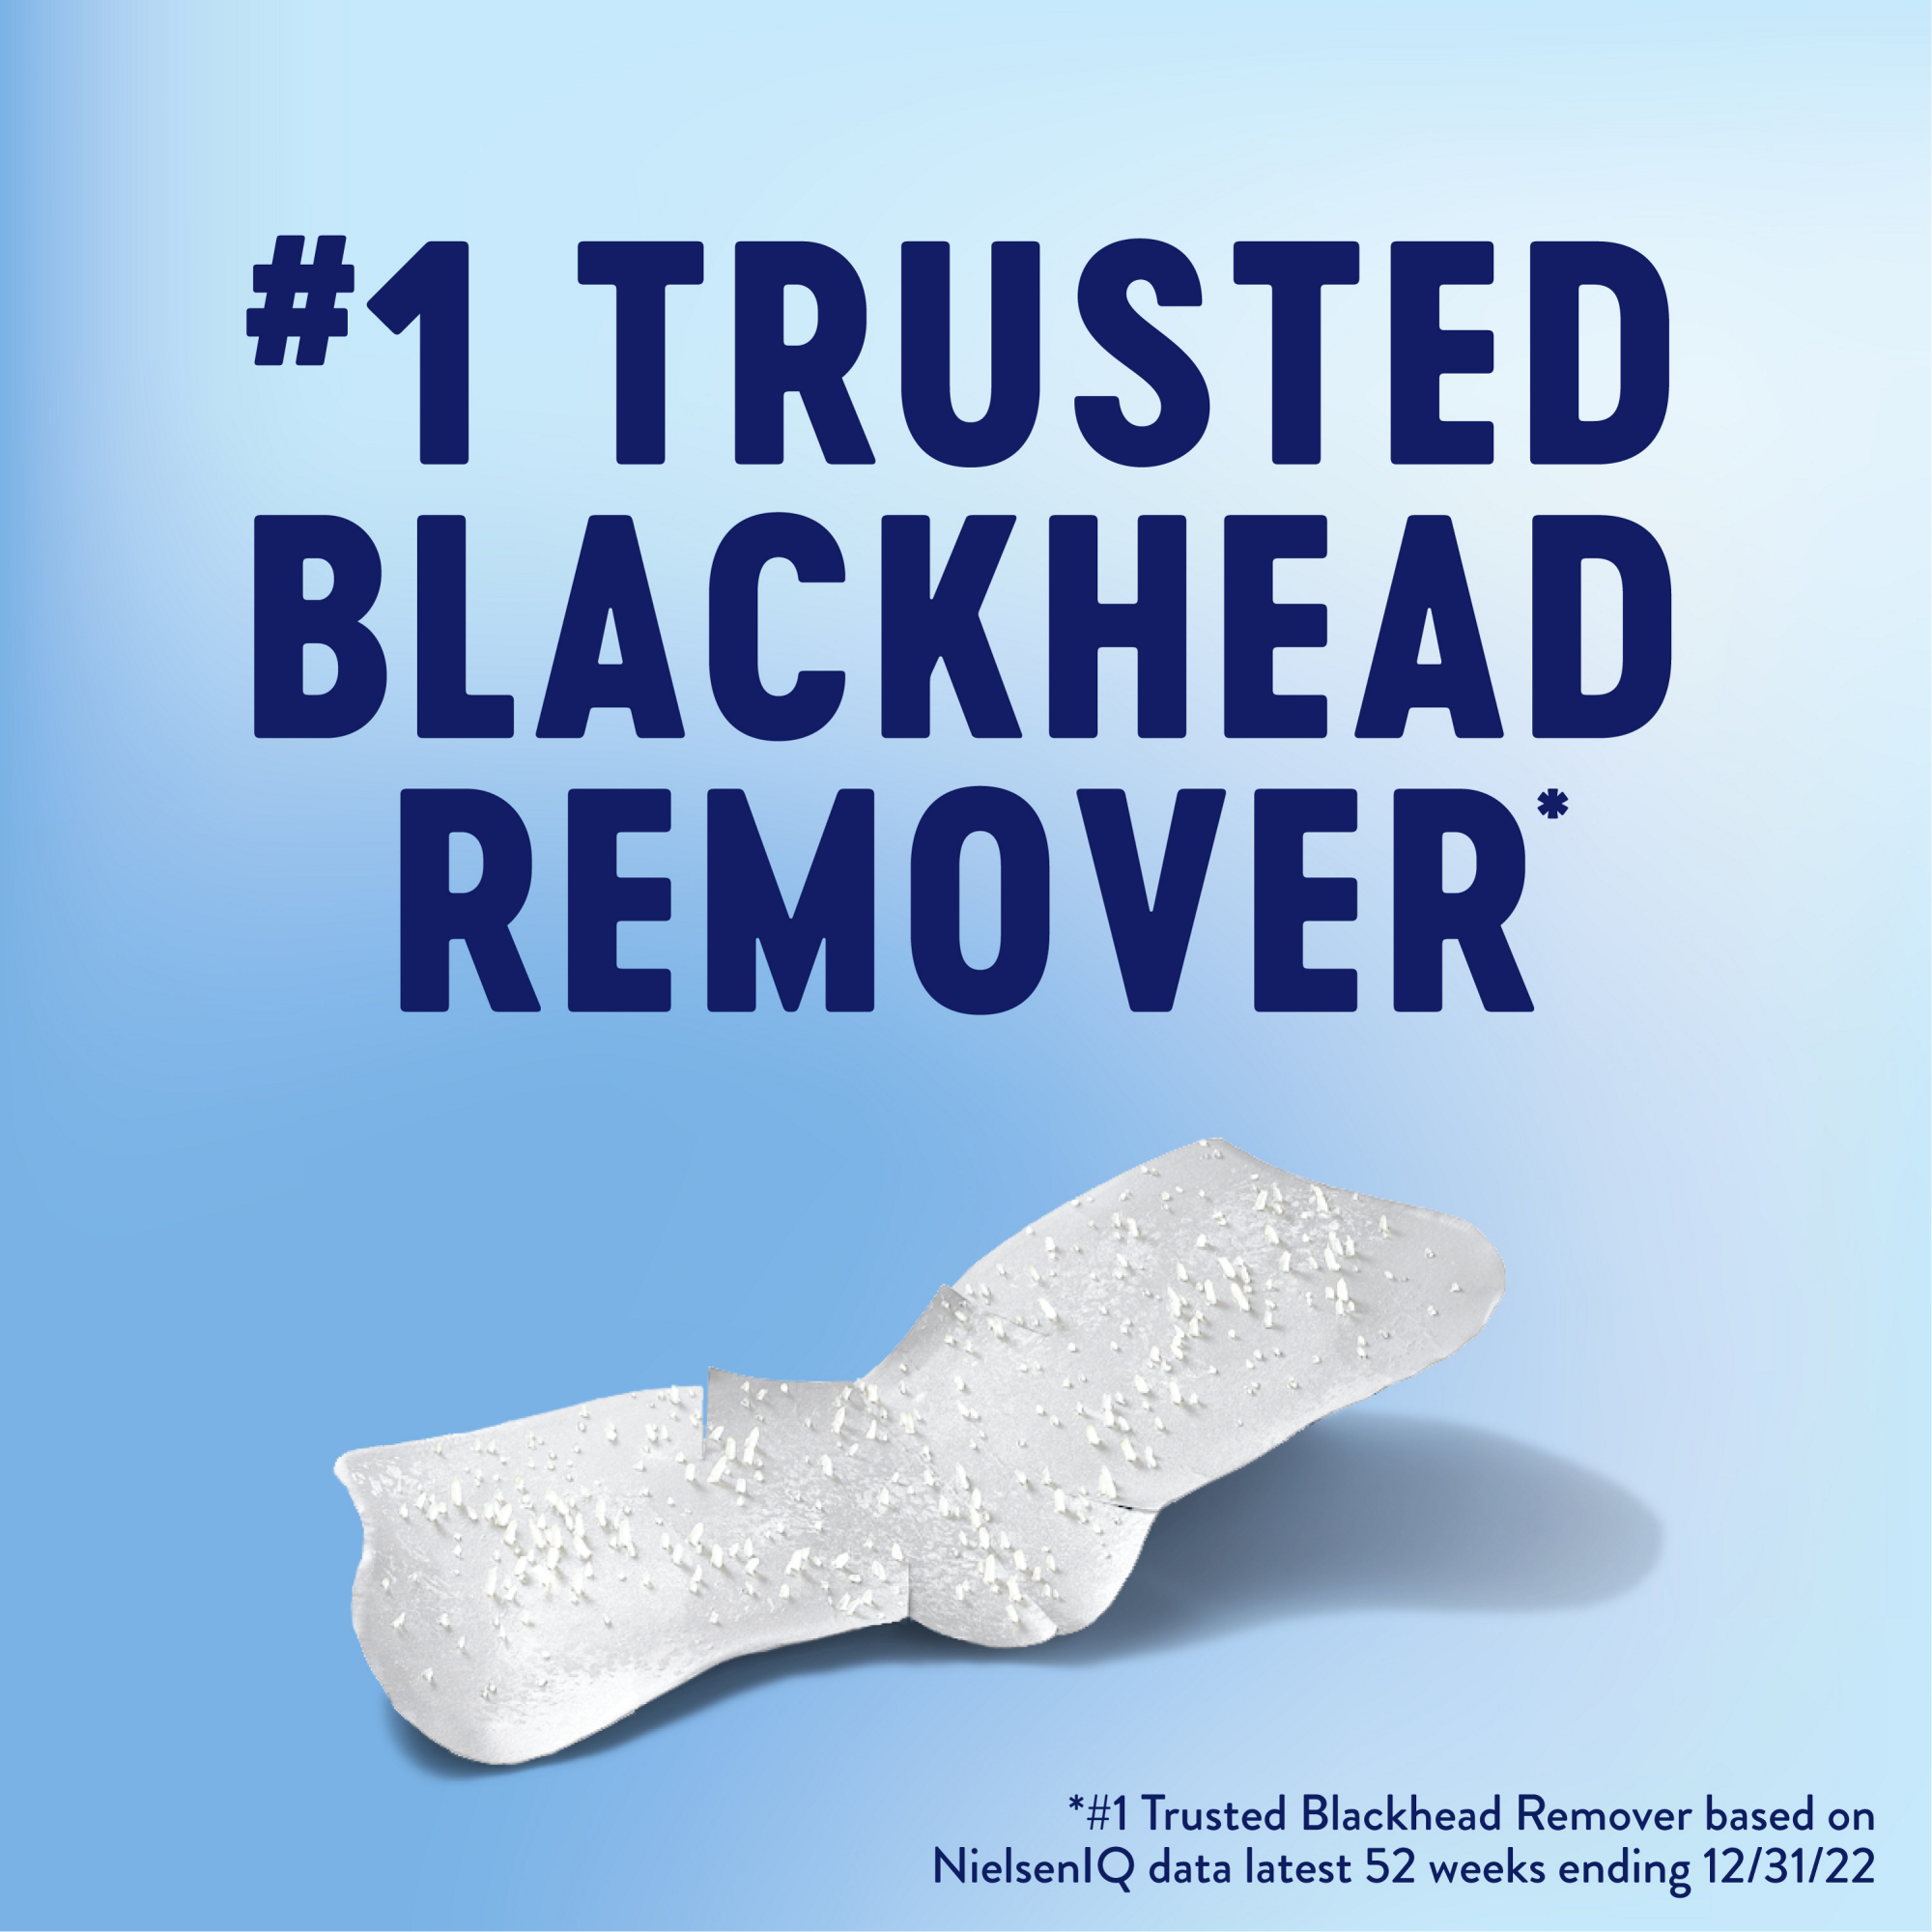 #1 Trusted blackhead remover.* #1 Trusted blackhead removed based on NielsenlQ data latest 52 weeks ending 12/31/22.